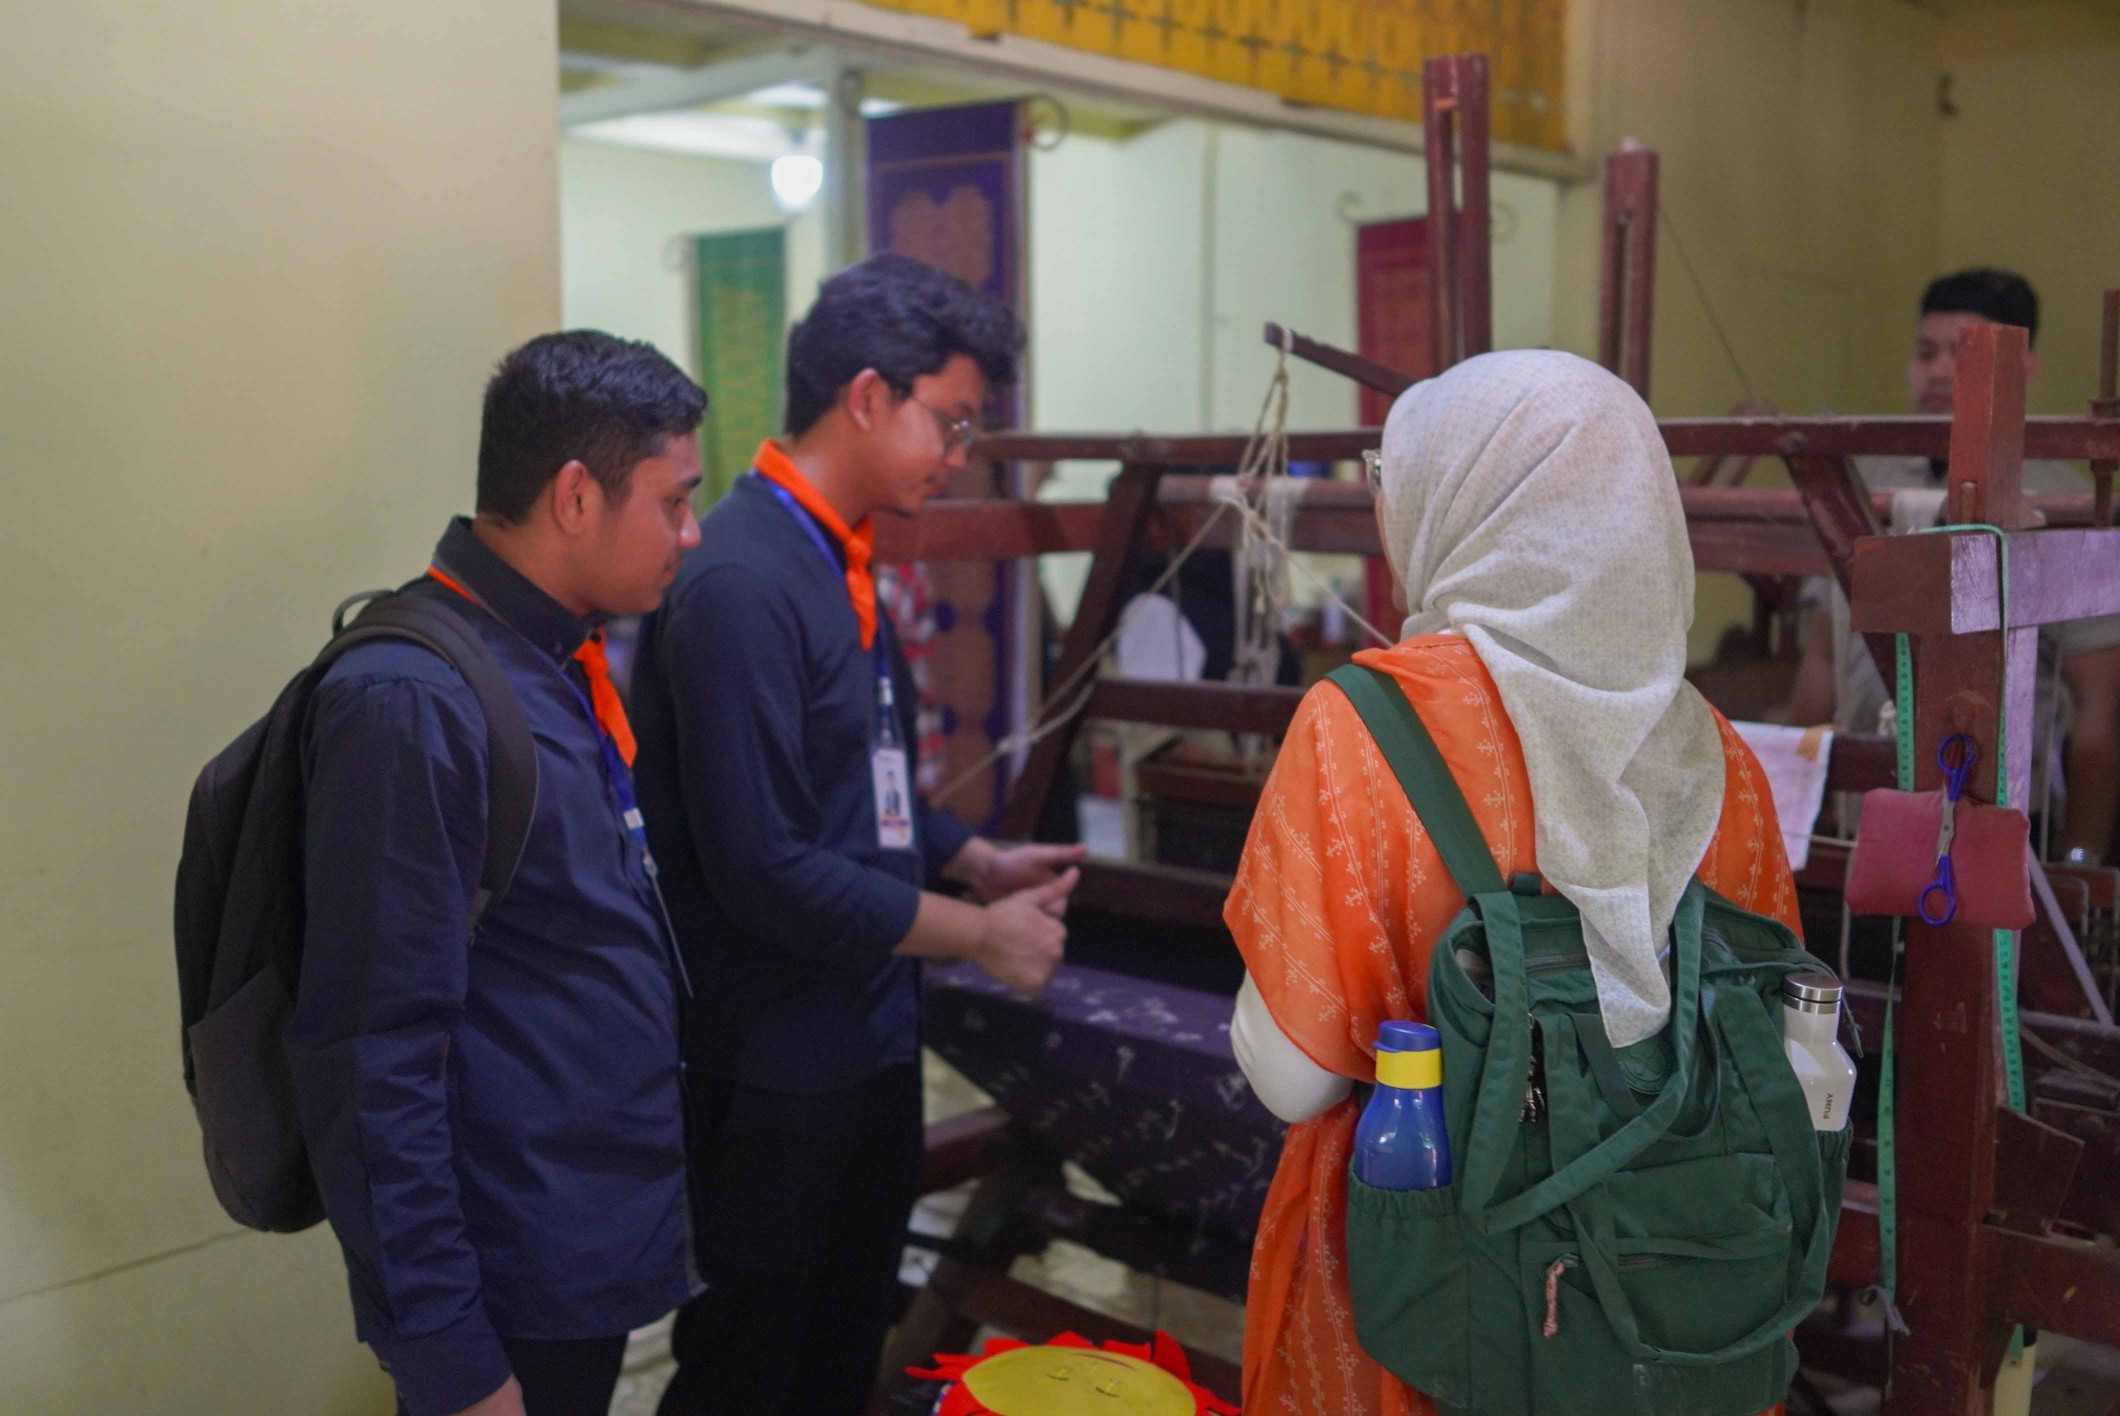 Telusuri Pekanbaru” Raker Komwil I Apeksi, Pemuda Pelopor Medan: Medan Juga Kaya Heritage, Pusat Perdagangan dengan Kemudahan Distribusi